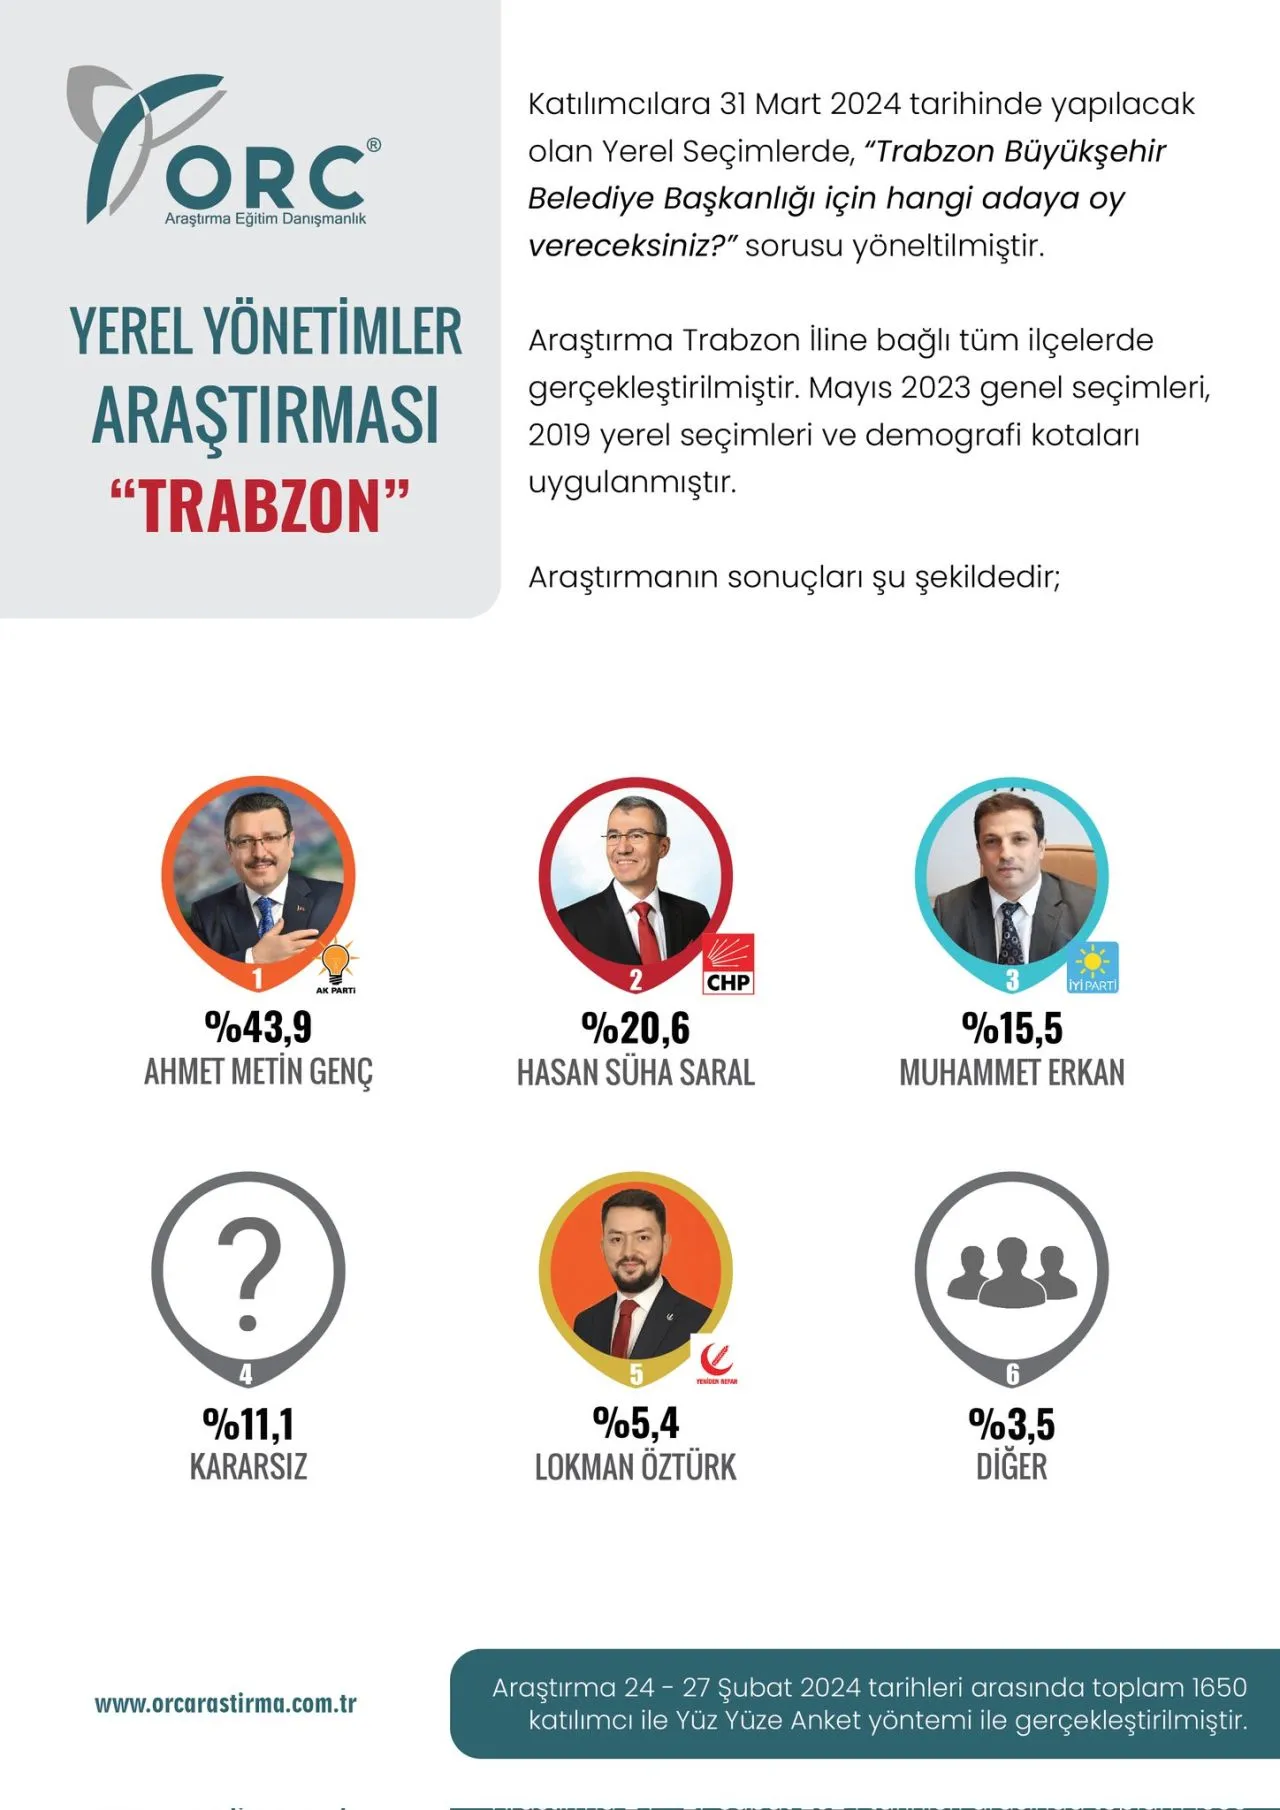 ORC Araştırma, Trabzon anketini açıkladı: İki parti arasında 20 puan fark çıktı 13